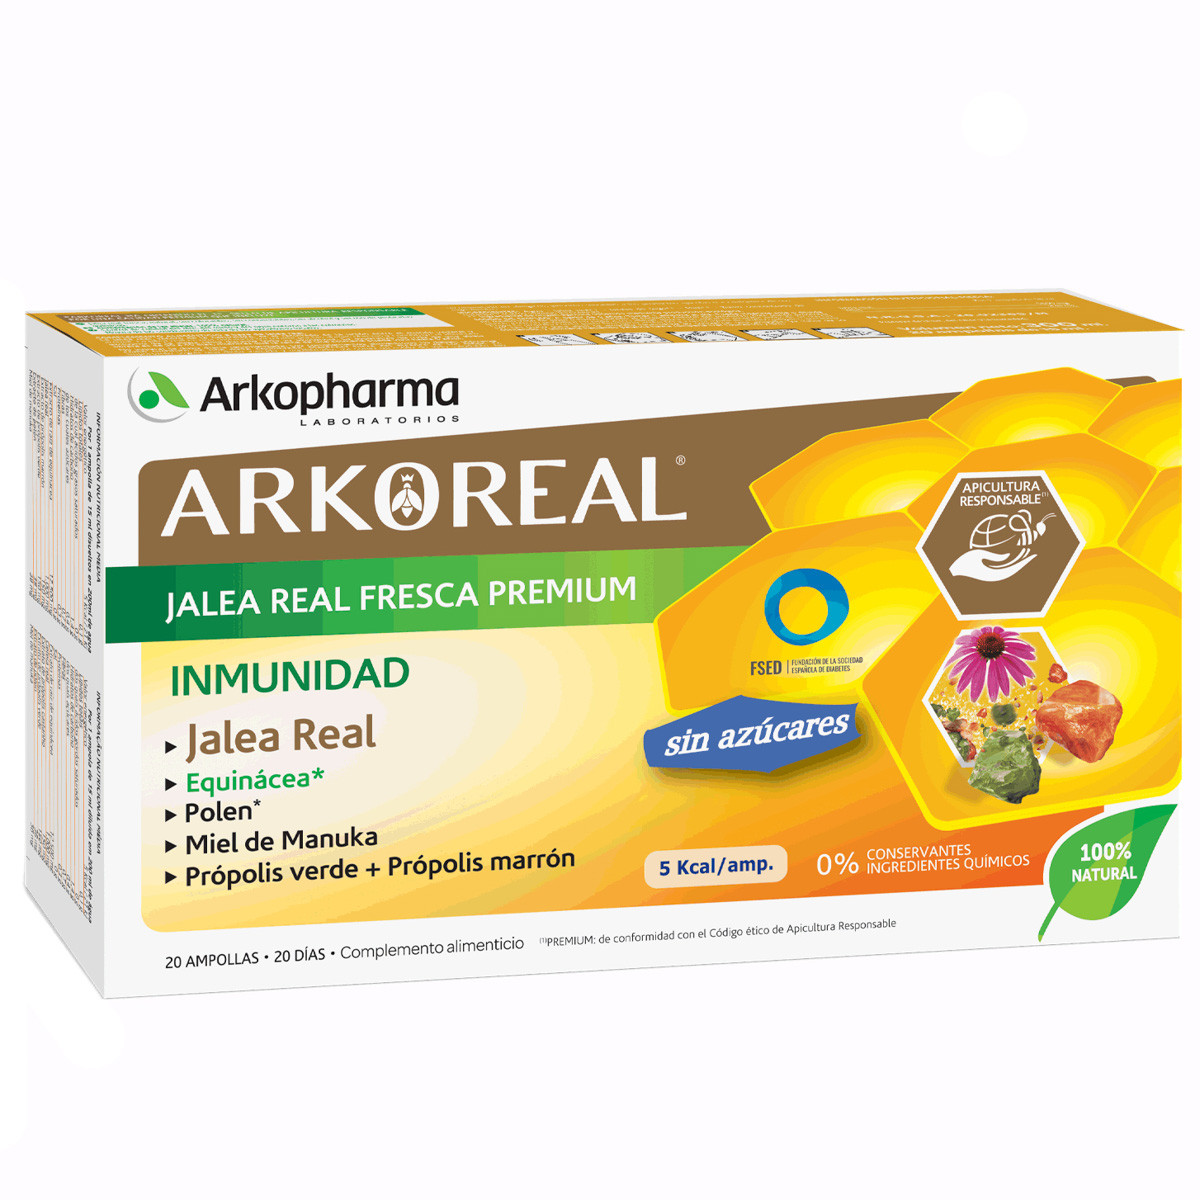 Imagen de Arkopharma Arkoreal jalea real inmunidad sin azúcar 20 ampollas